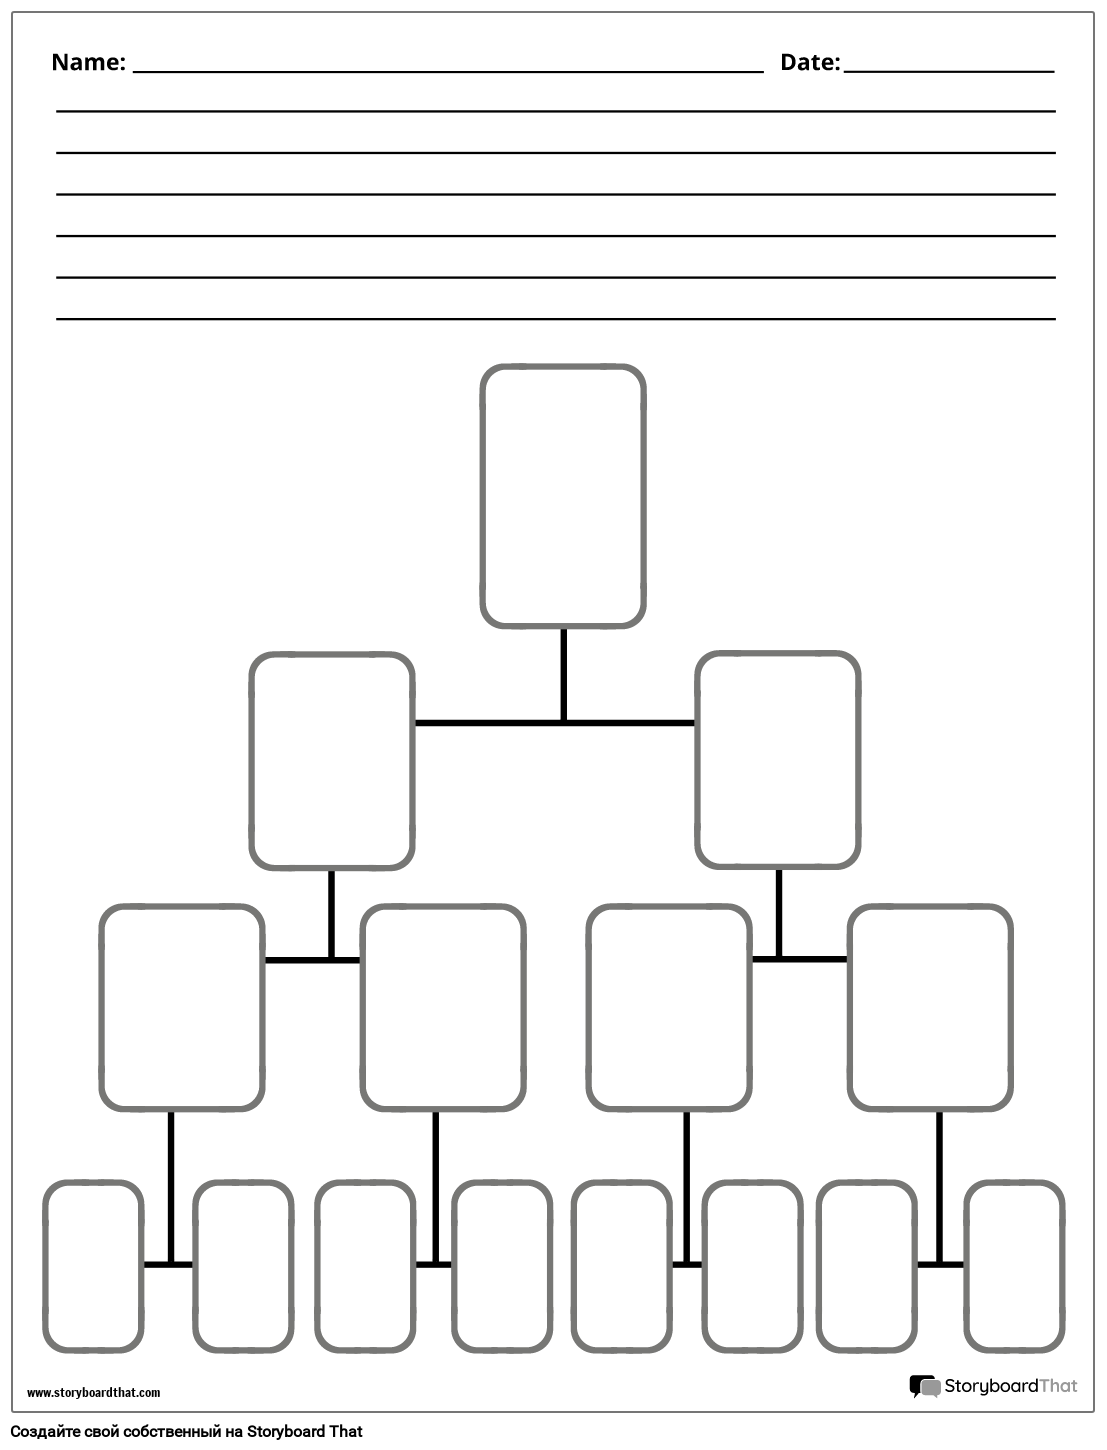 Новый шаблон схемы дерева страниц создания 4 (черно-белый)